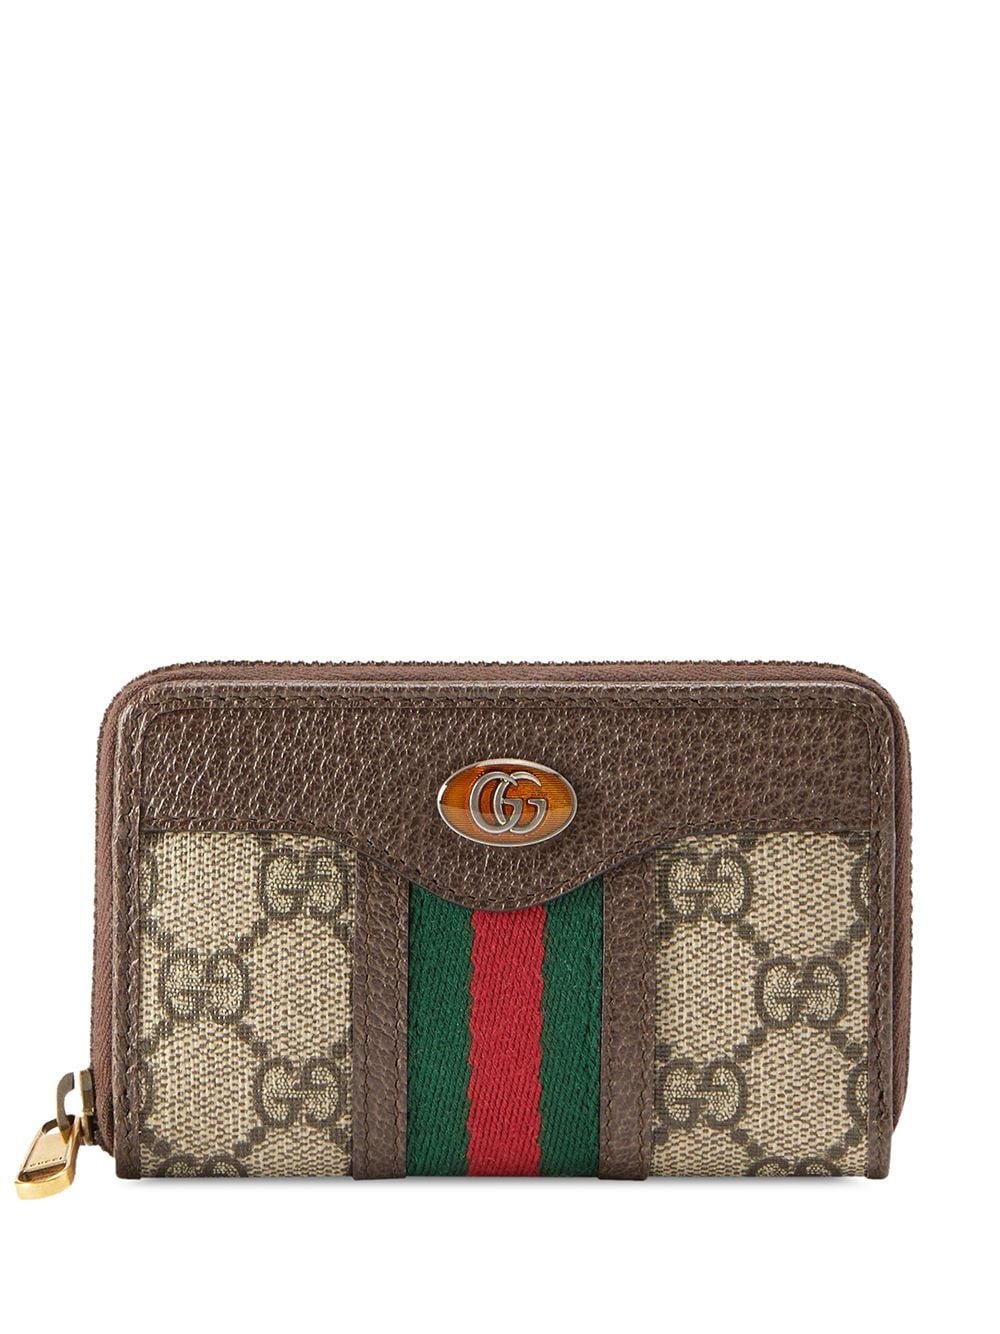 фото Gucci кошелек с монограммой